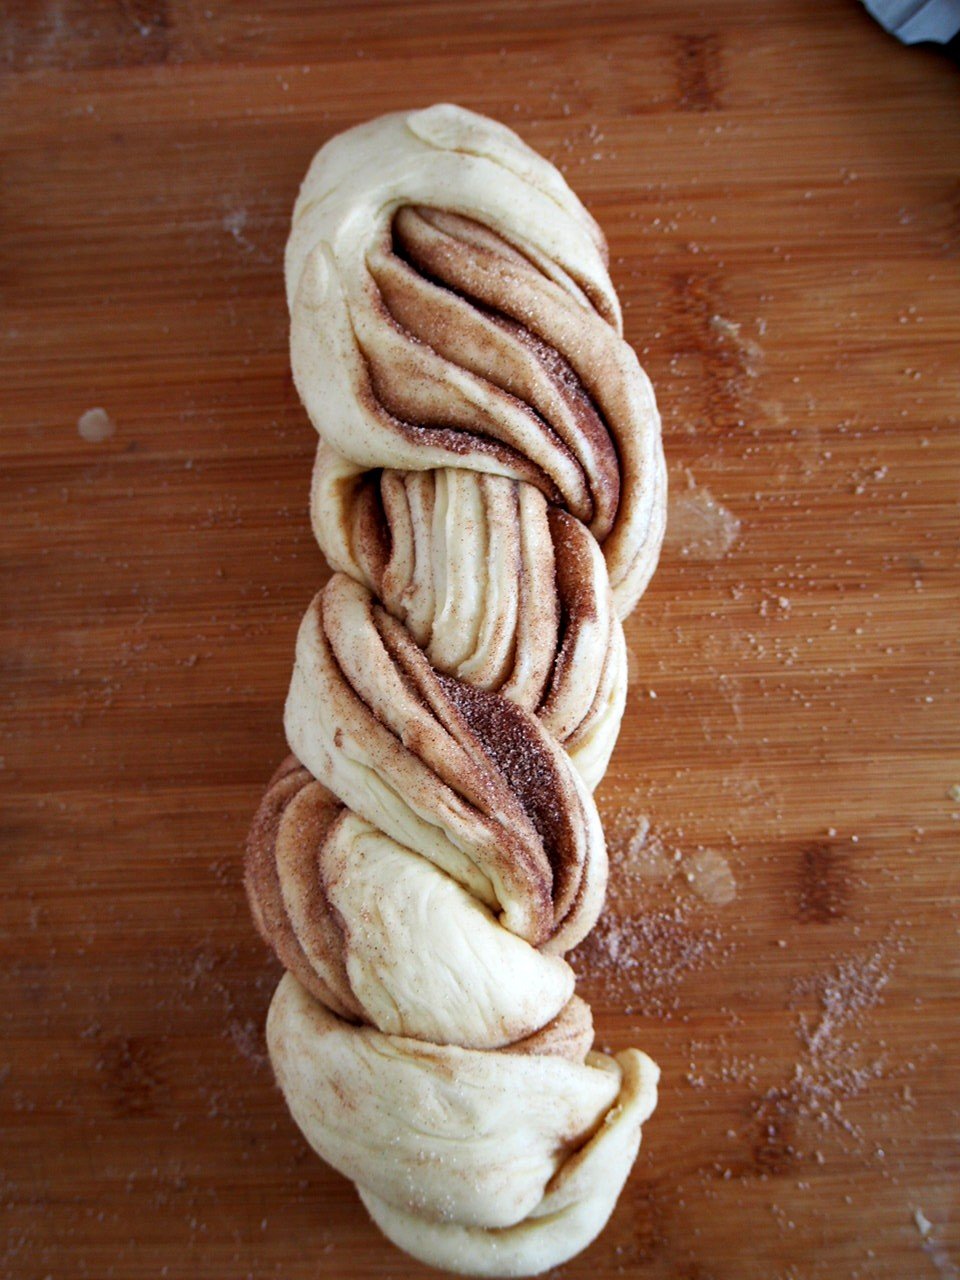 Braided Cinnamon Bread dough.